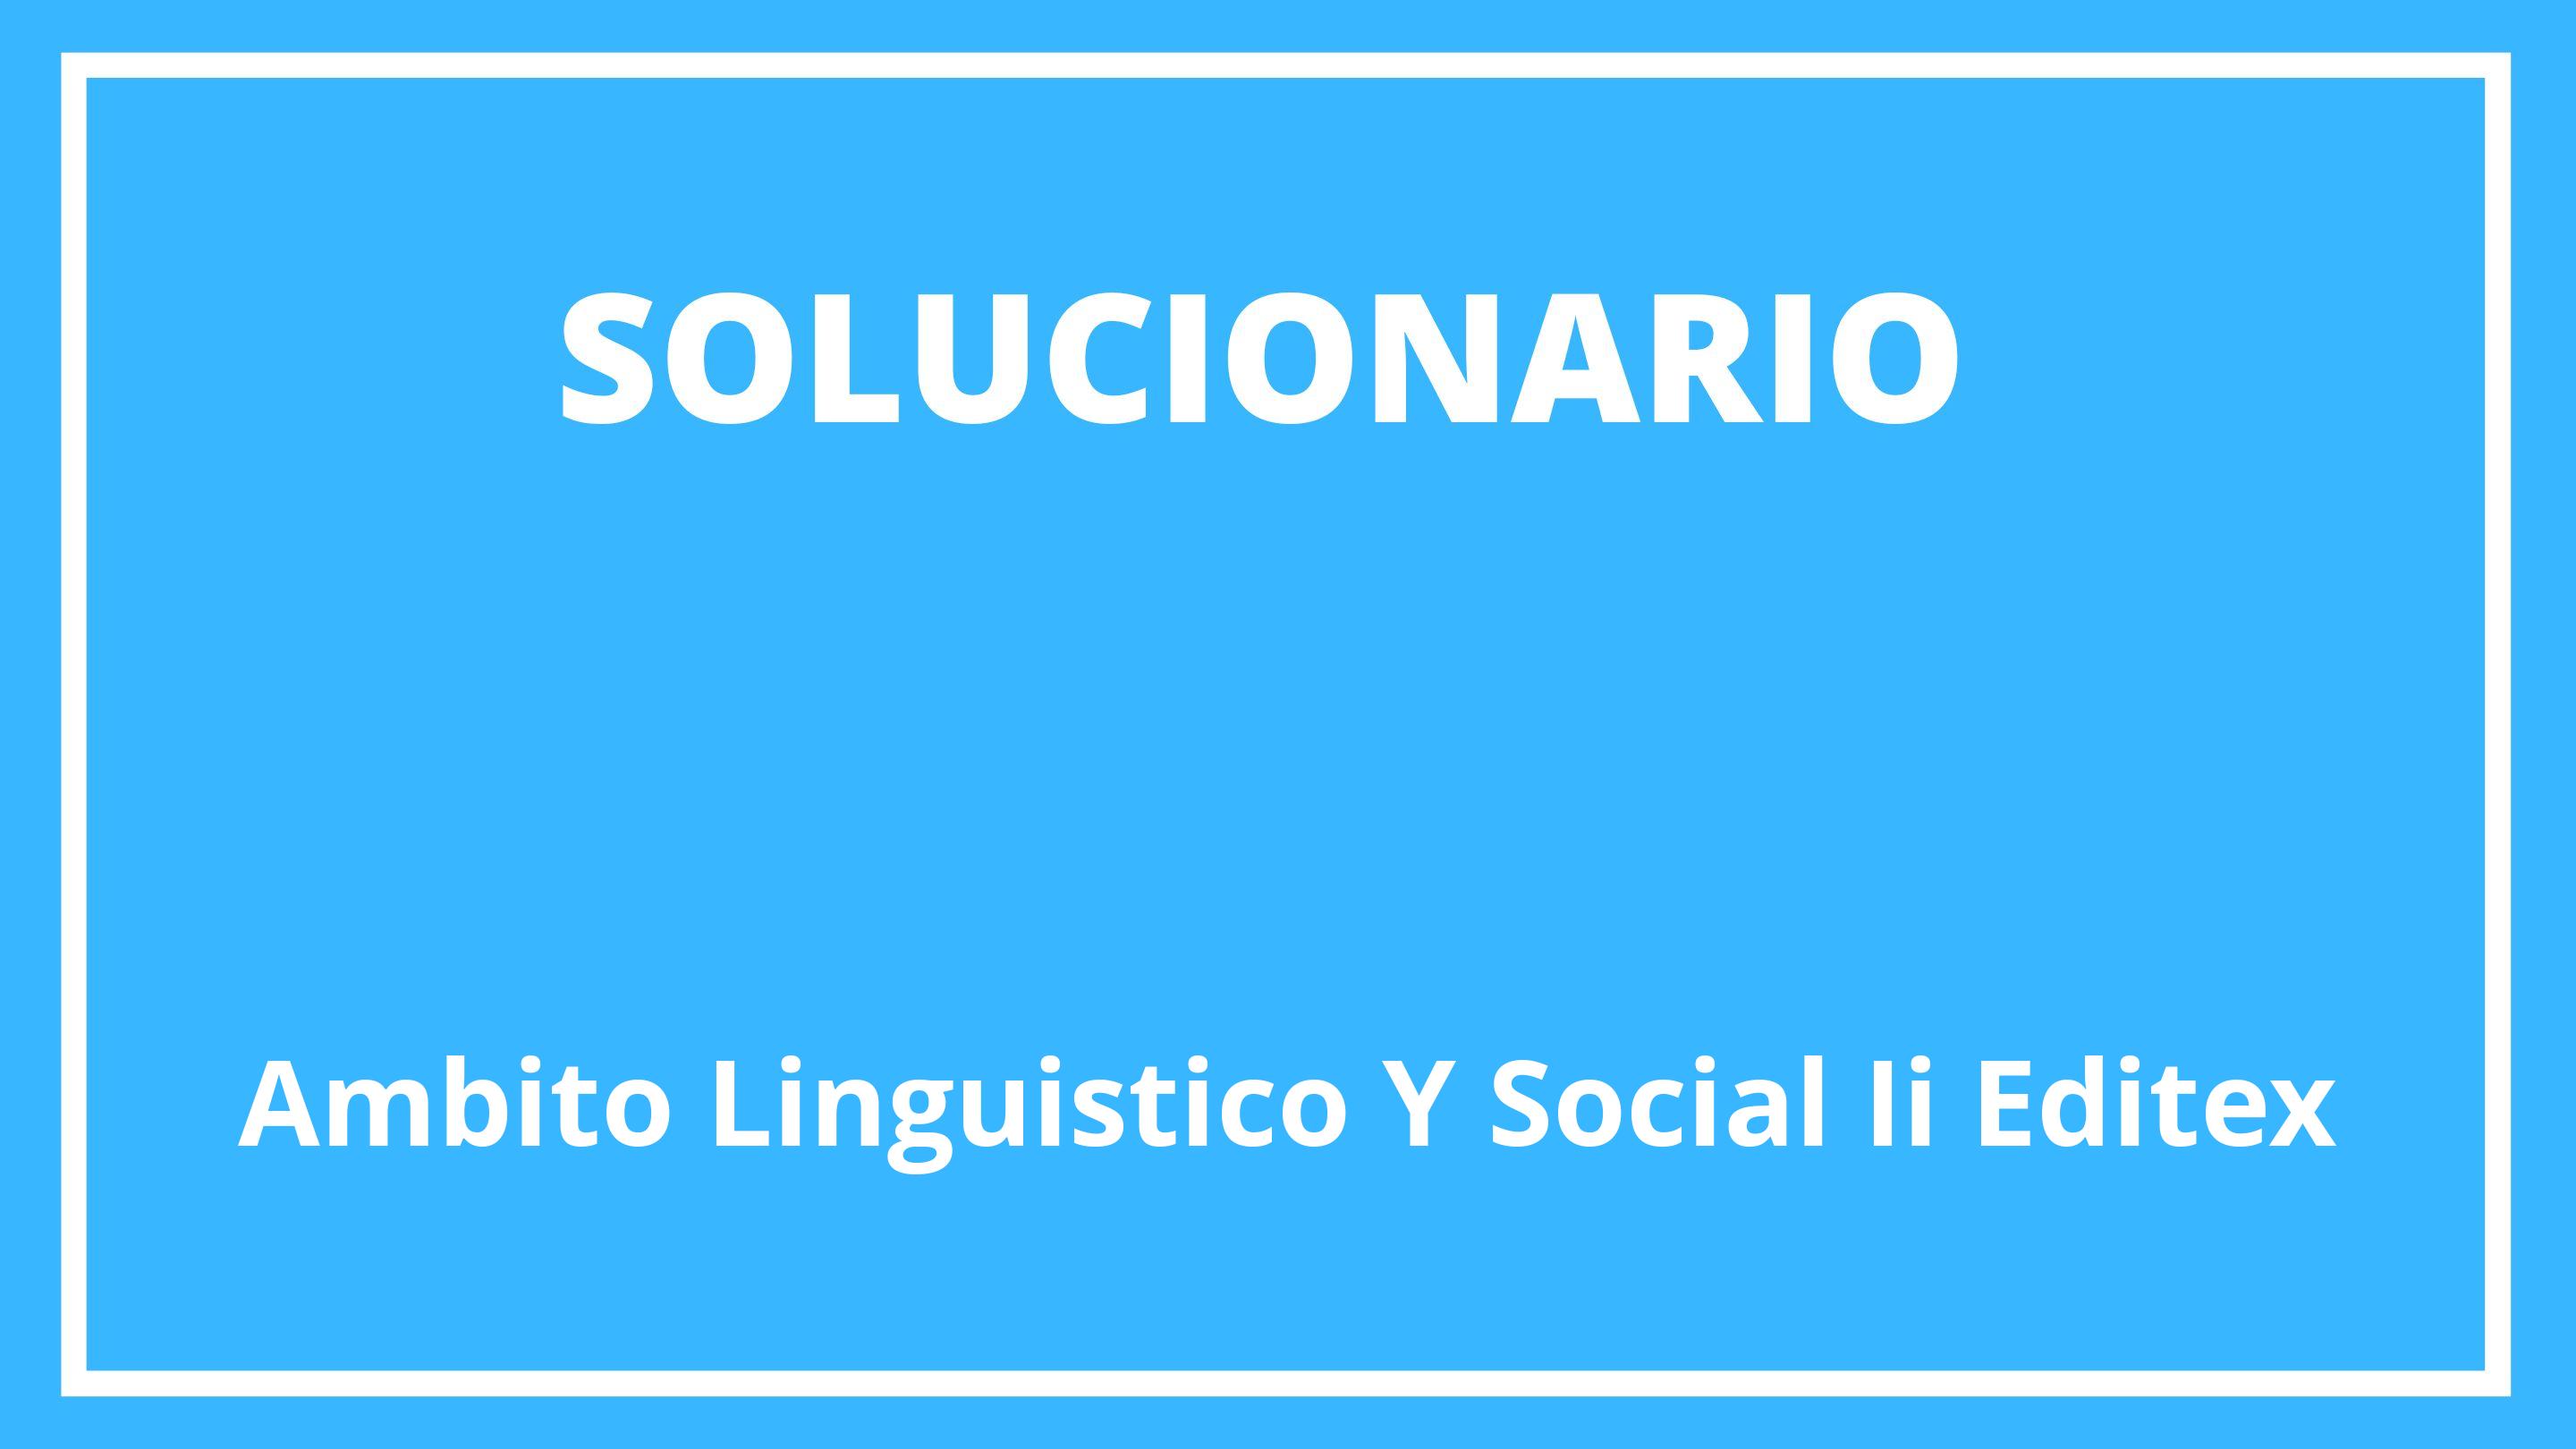 Solucionario Ambito Linguistico Y Social Ii Editex